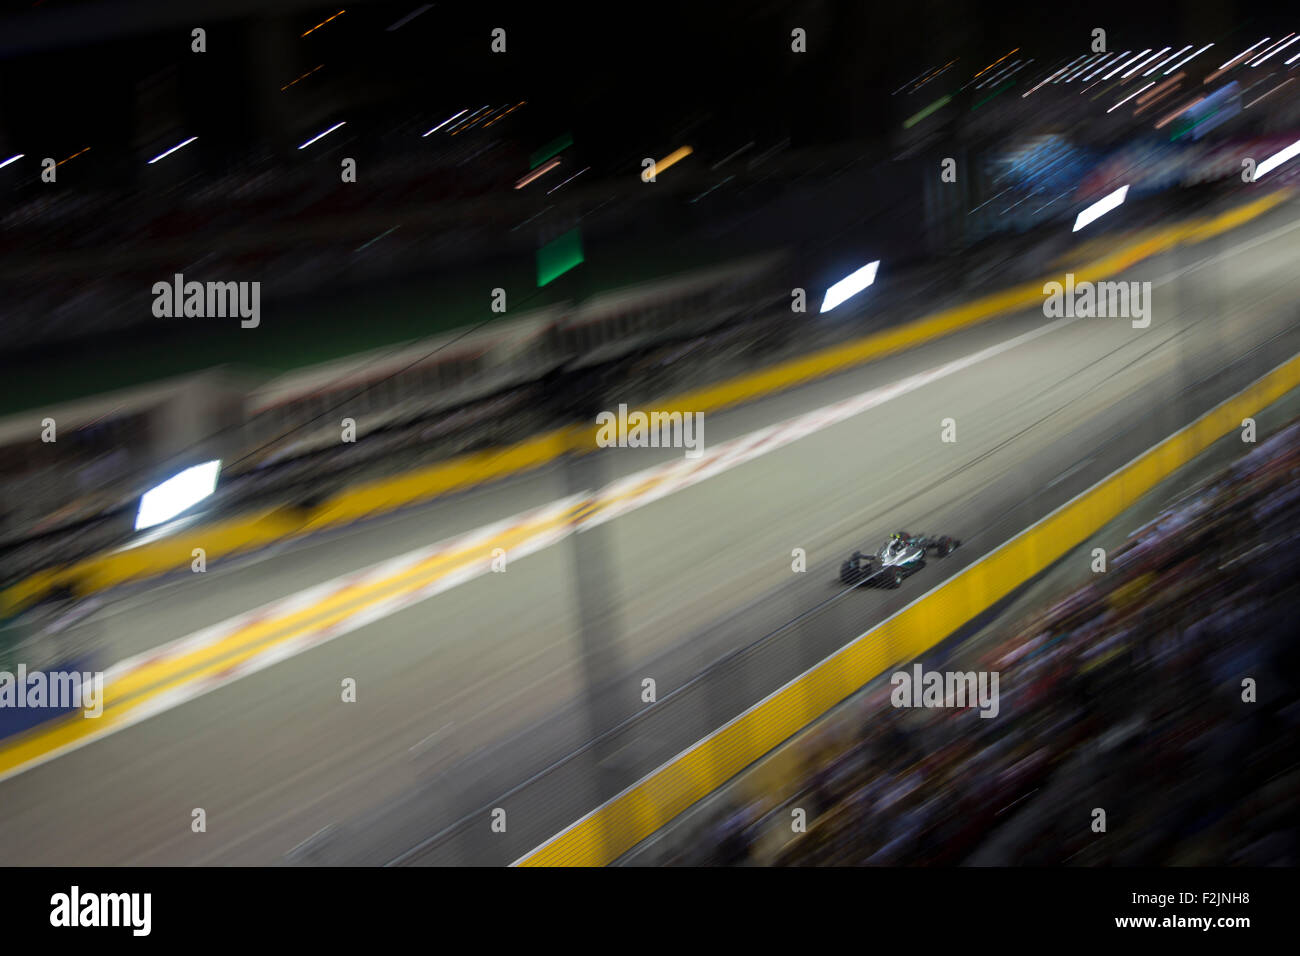 Singapur. 20 de septiembre de 2015. F1 Team Mercedes AMG enfoques turno 1 a Singapur Street Circuit Grand Prix de Fórmula 1 Crédito: Chung Jin Mac/Alamy Live News Foto de stock